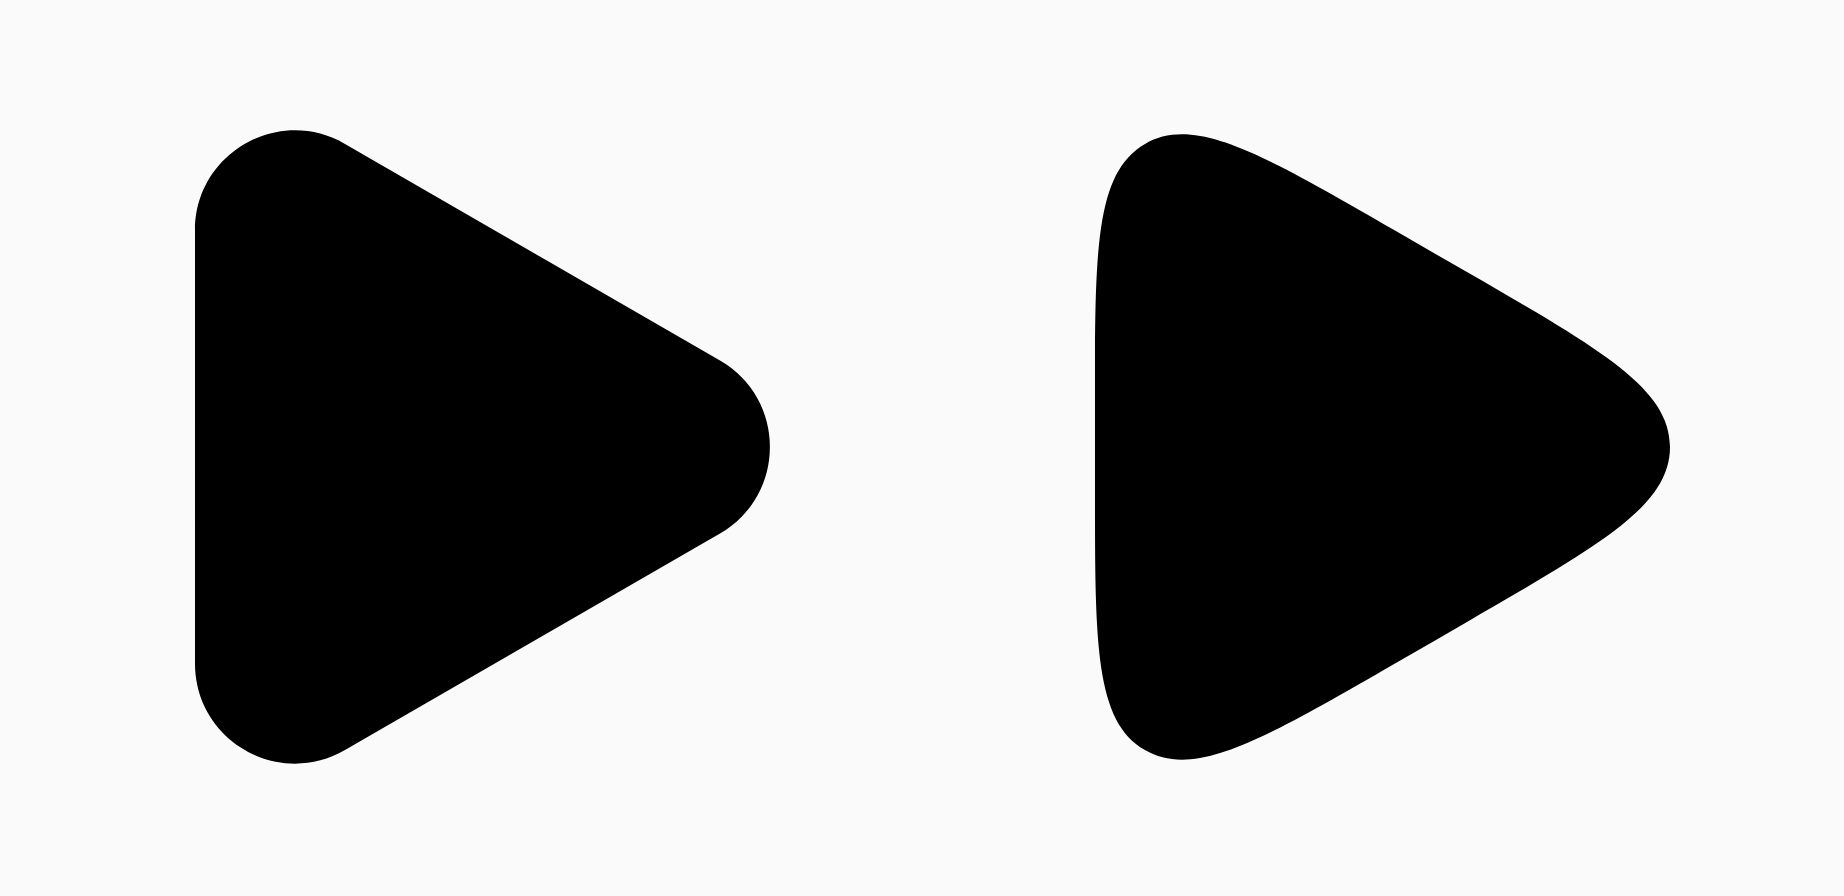 Dos triángulos negros que muestran la diferencia en el parámetro de suavizado.